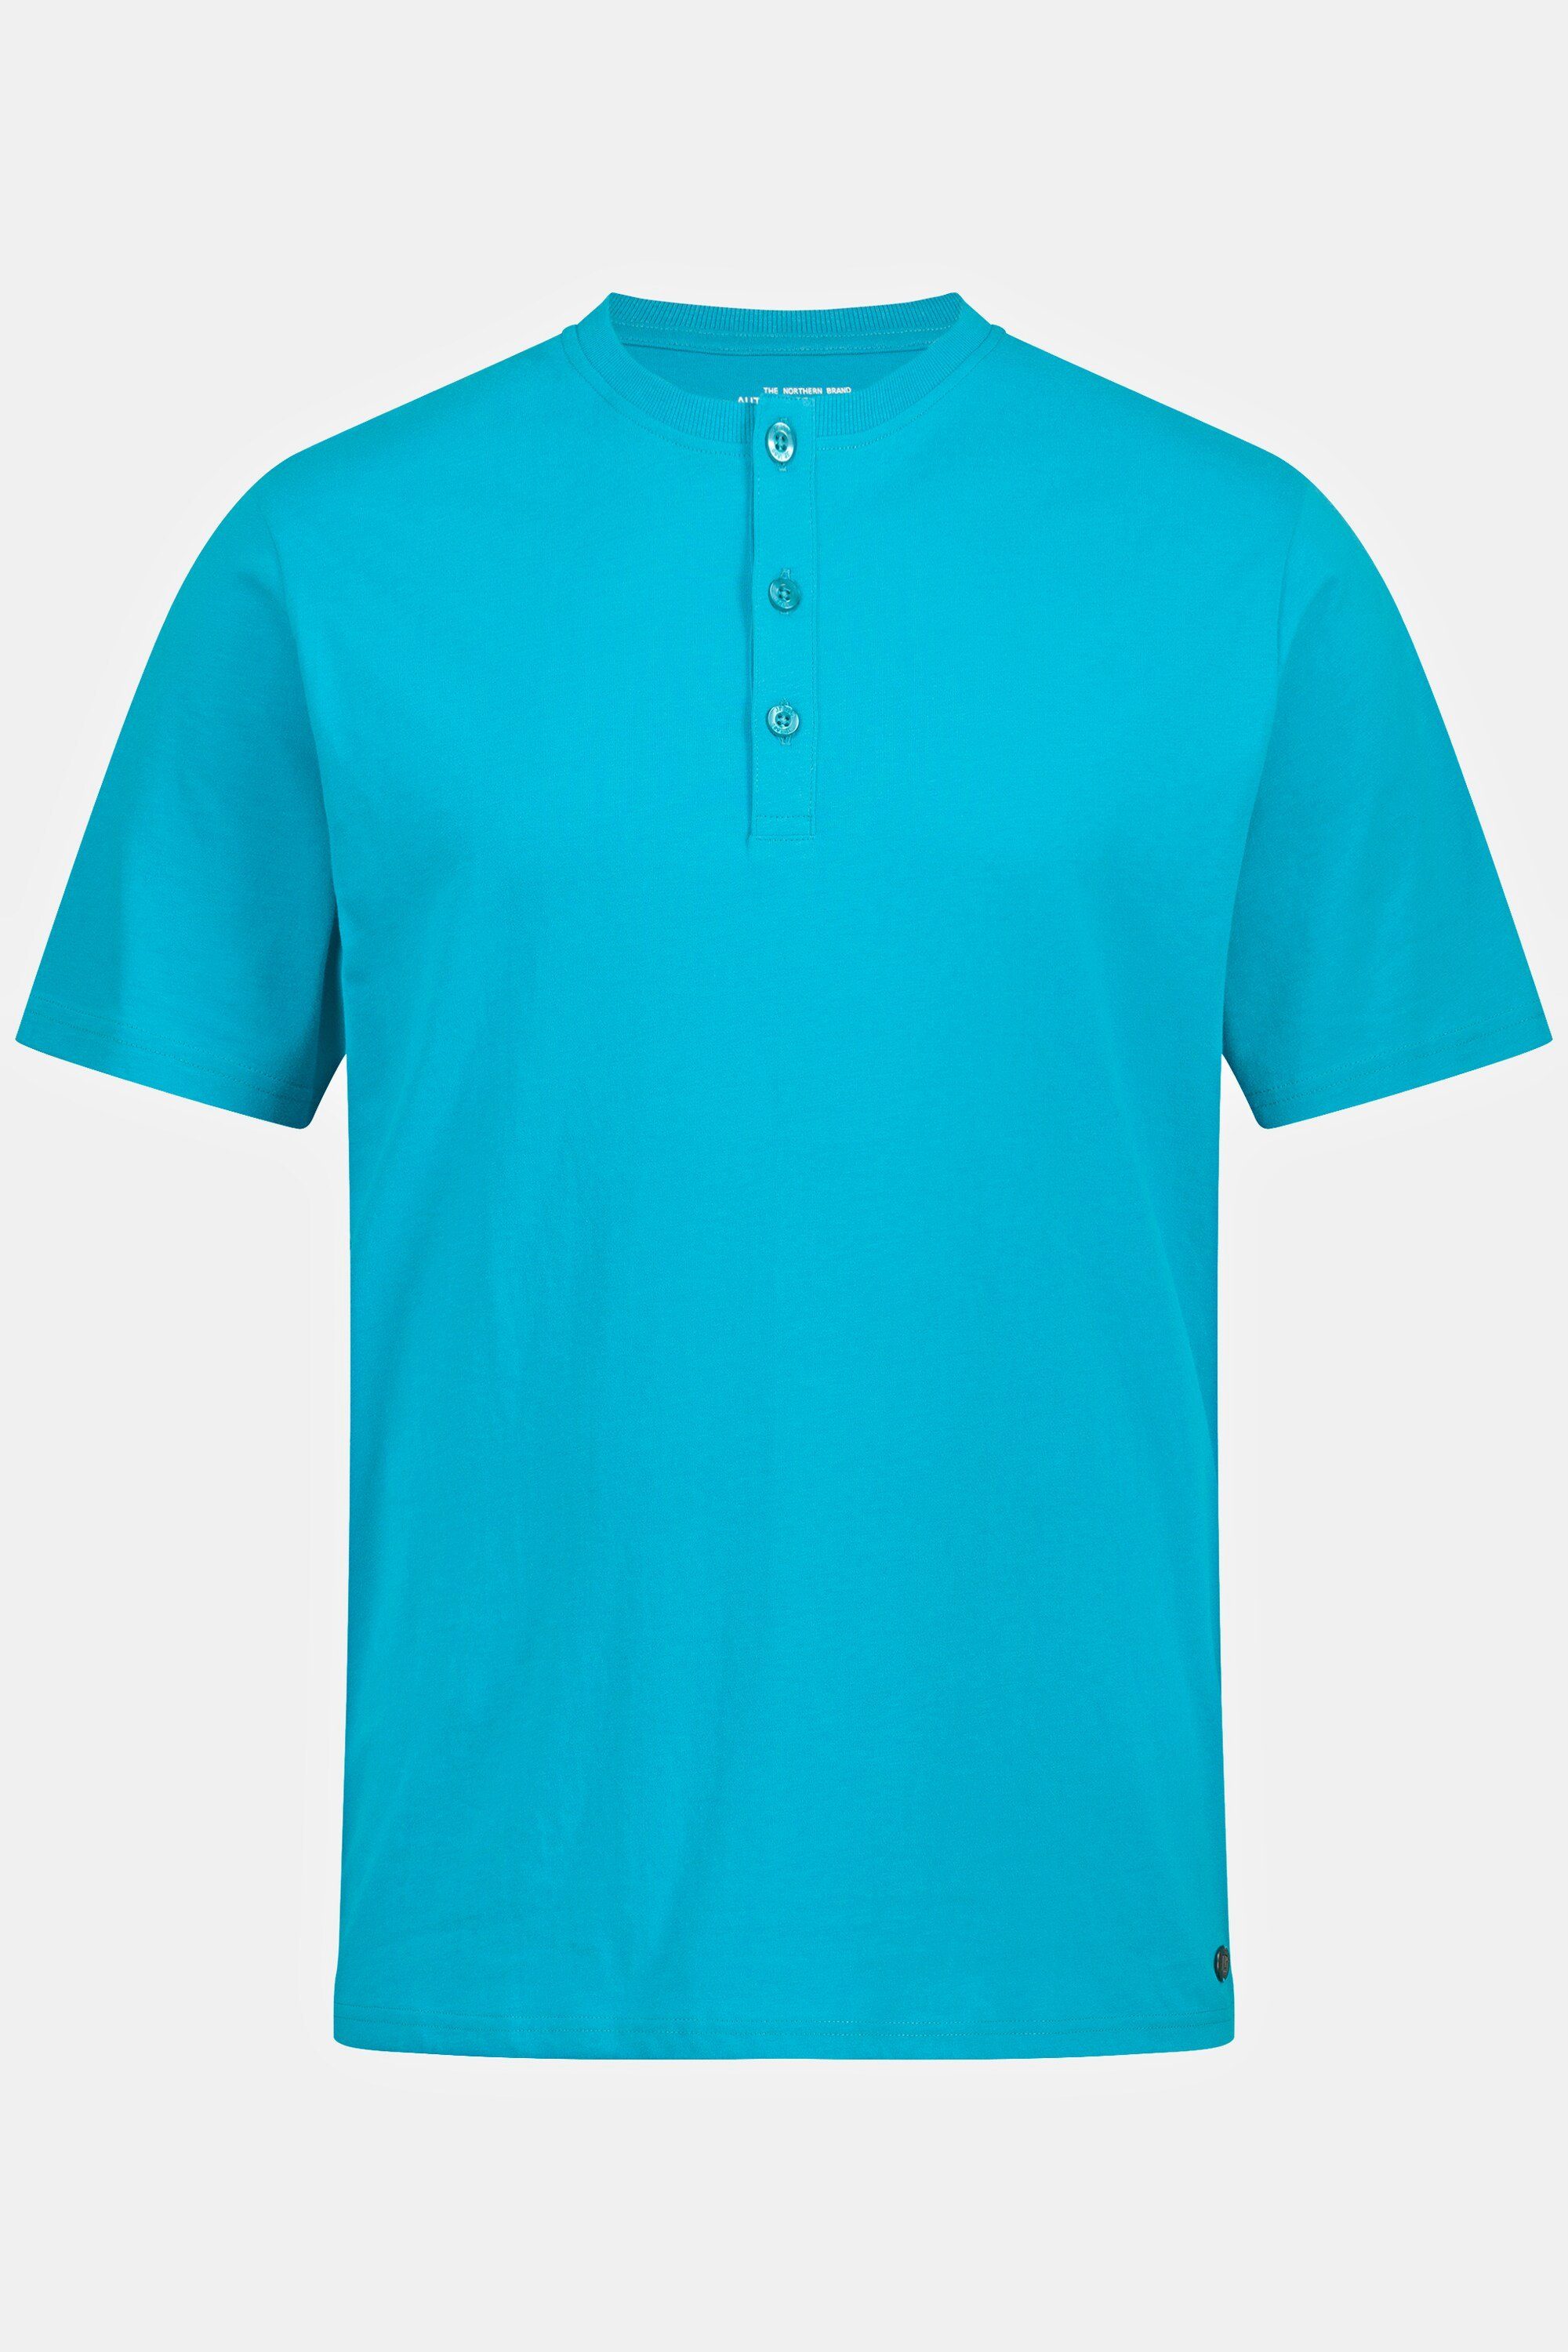 Basic Halbarm Knopfleiste Henley JP1880 dunkles türkis T-Shirt